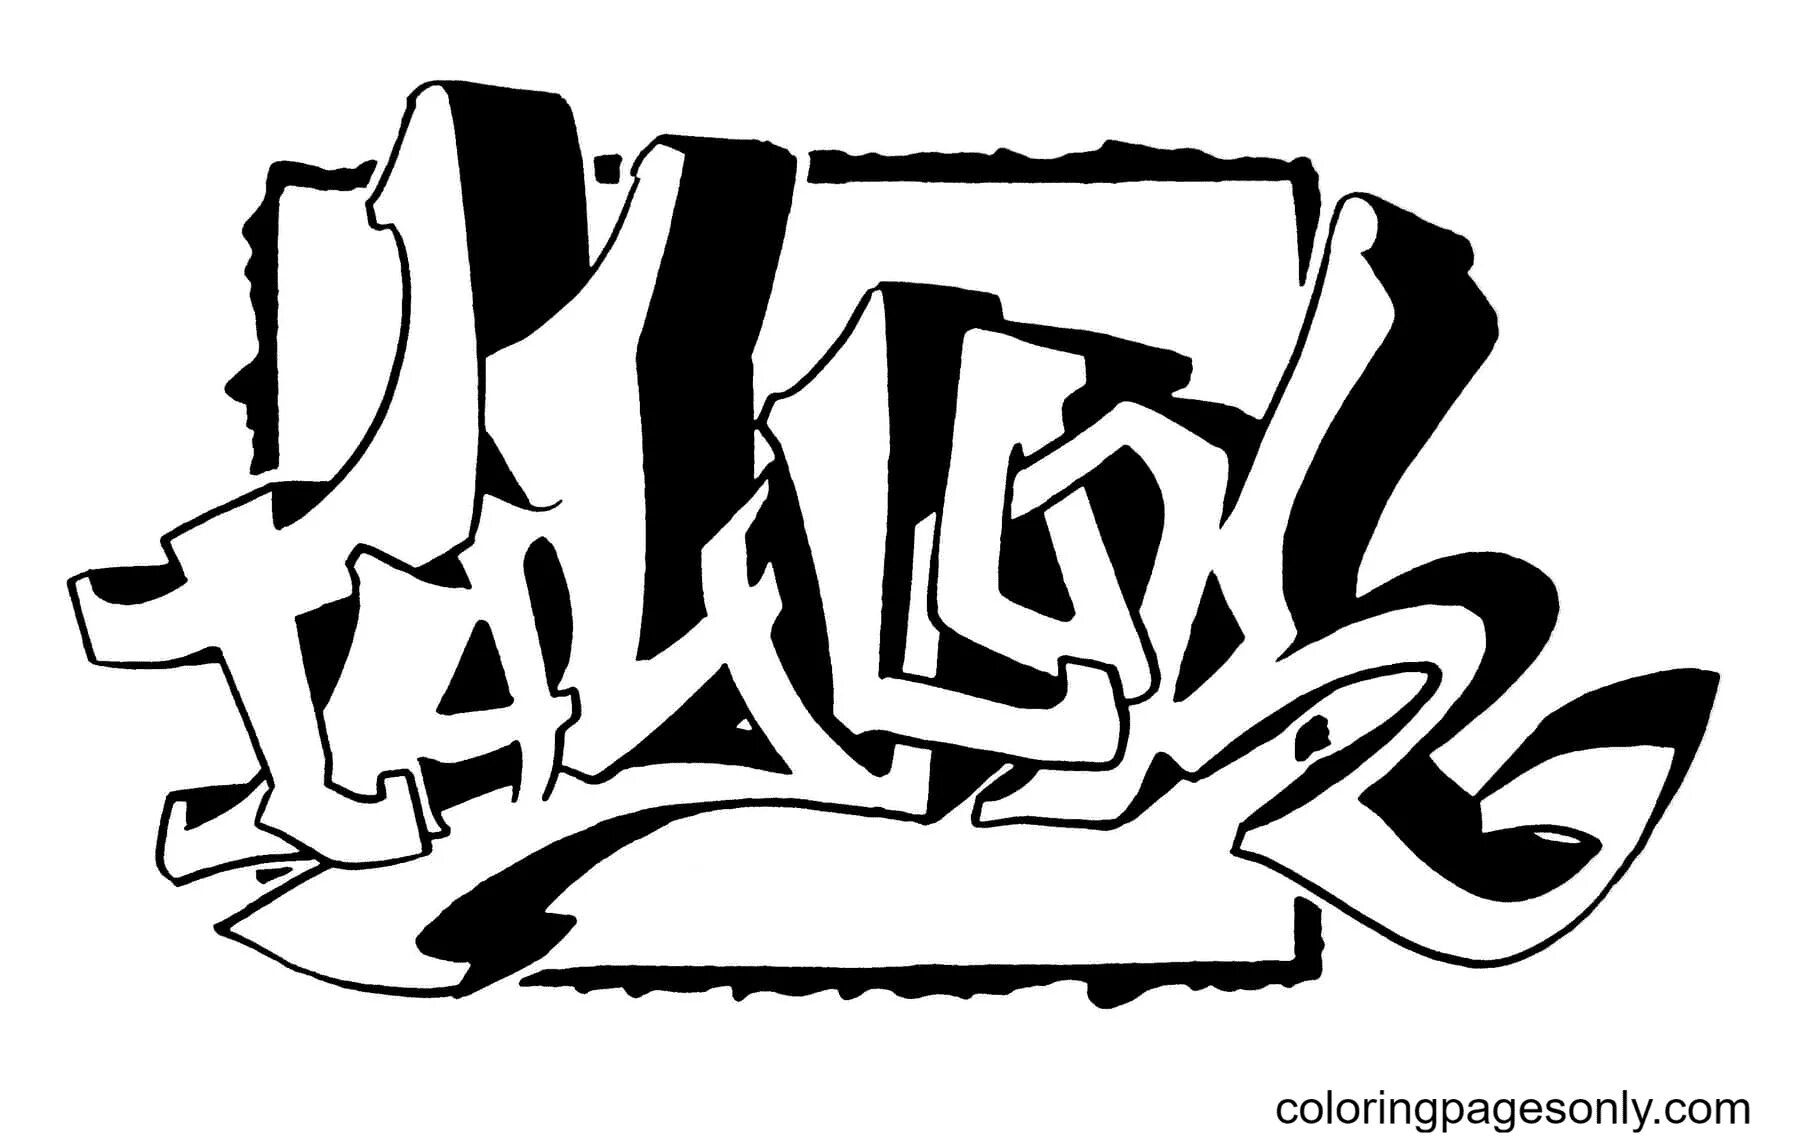 Graffiti sketch #14